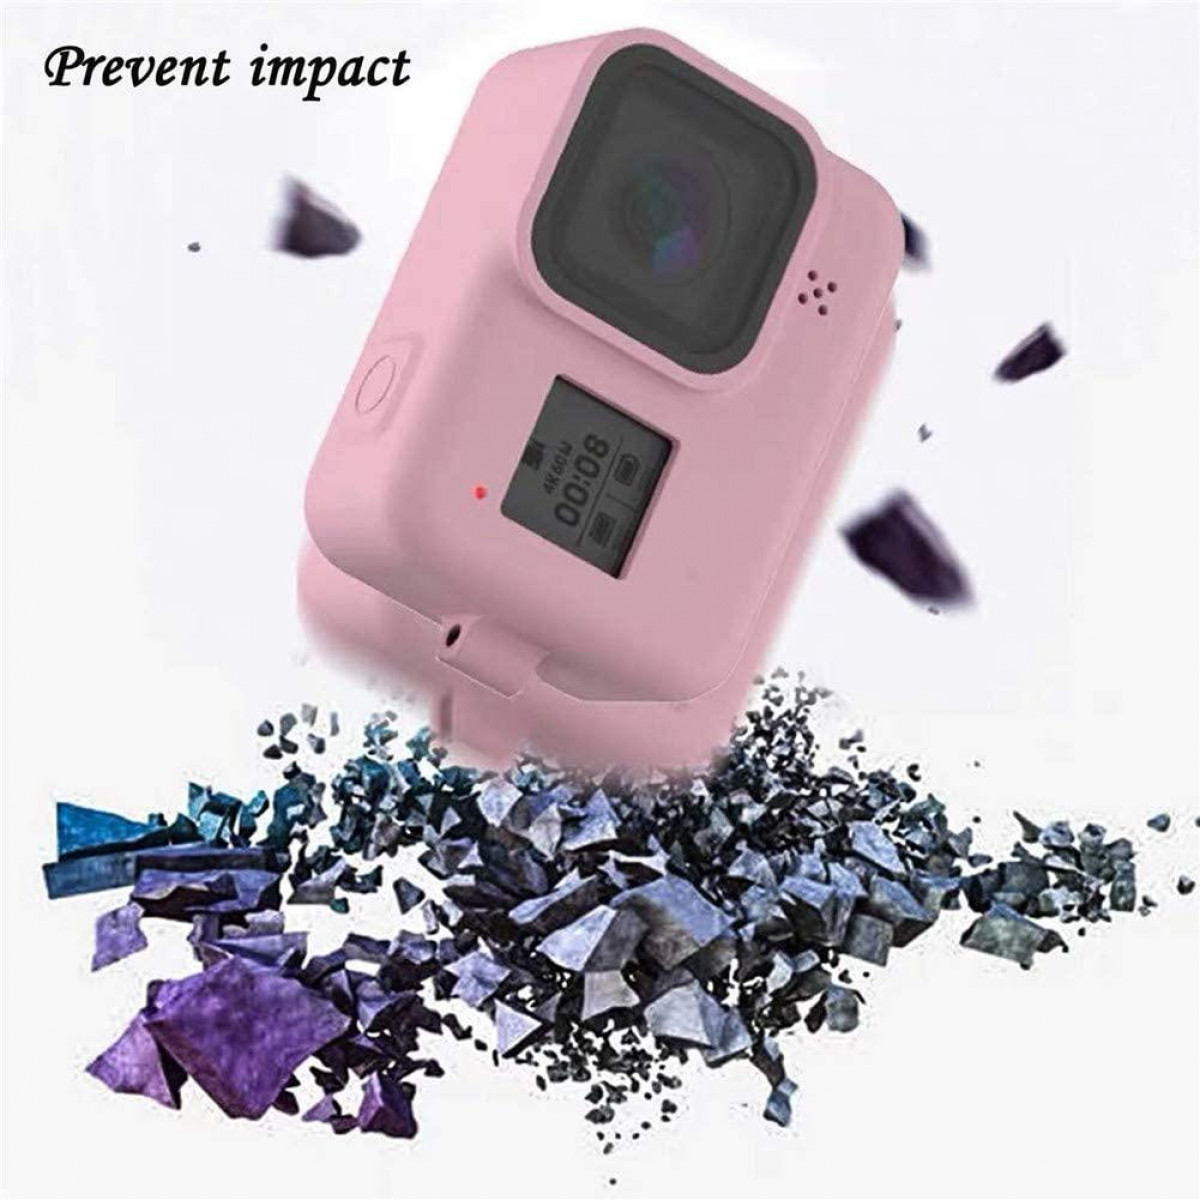 INF Silikonhülle und GoPro Tasche, - Kamera Black Zubehör 8 Hero für rosa rosa